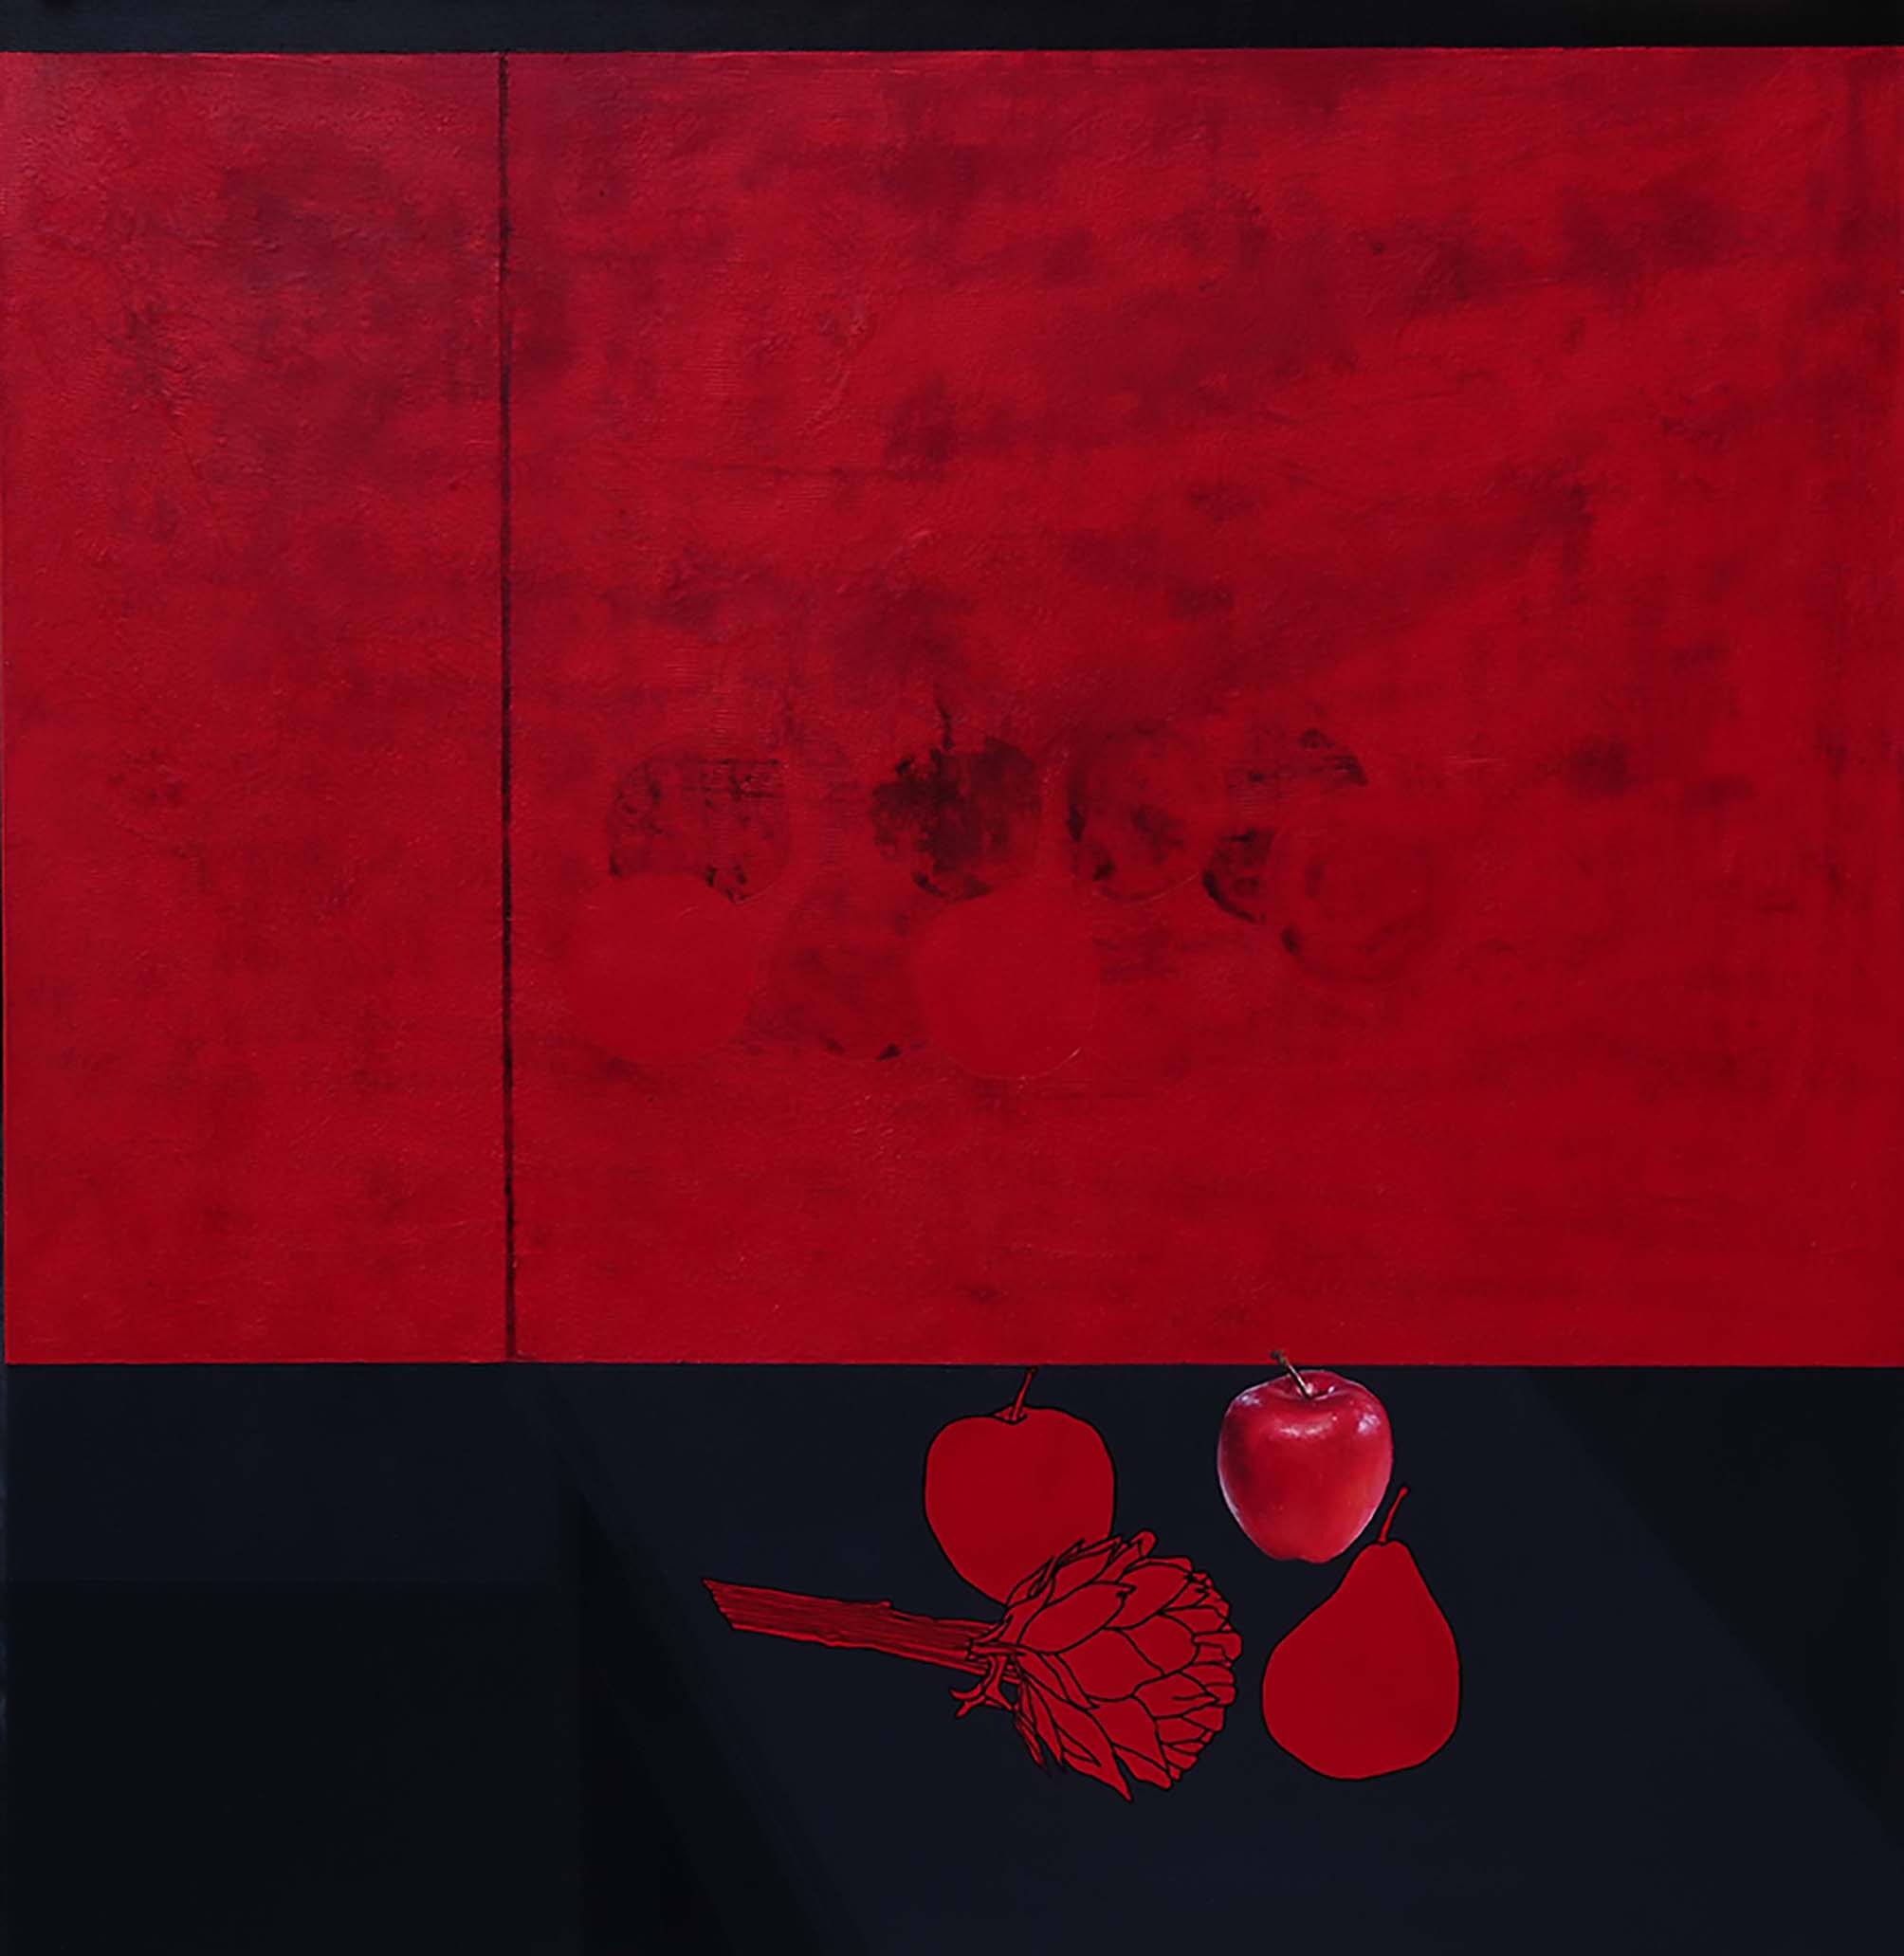 devabil kara, naturmort kırmızı, 2009, tuval üzerine akrilik, 130x120 cm